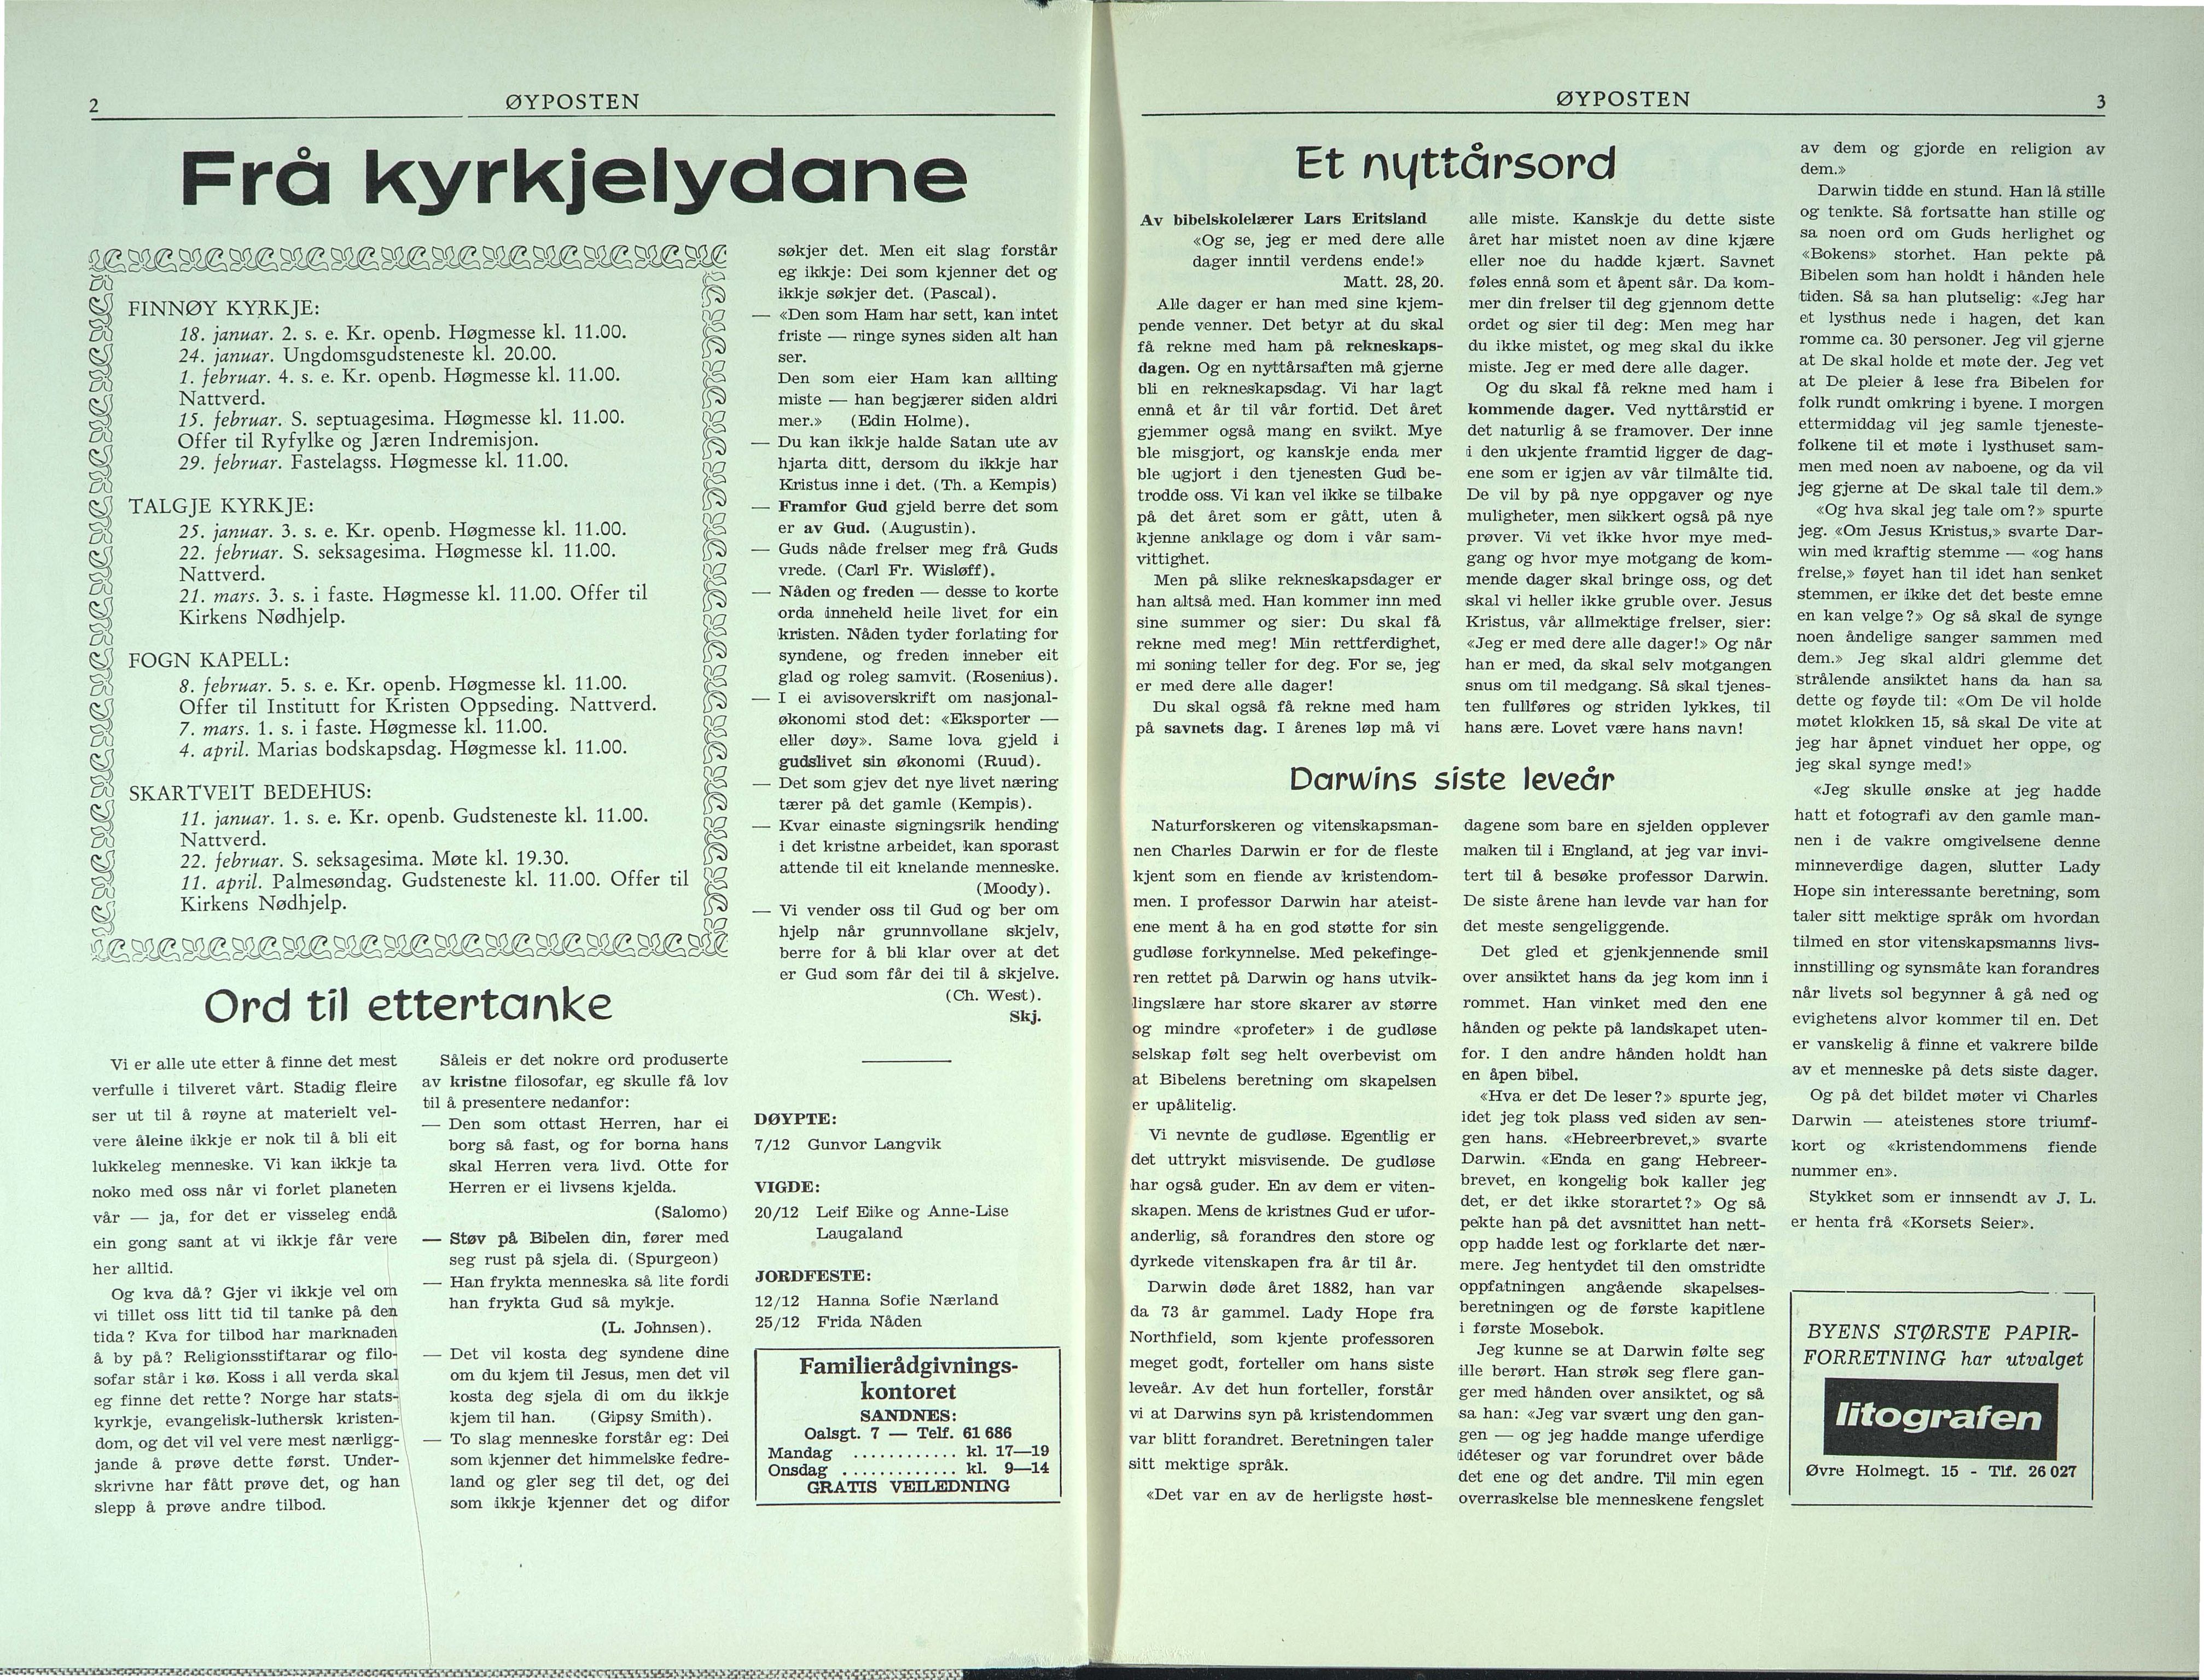 , Finnøy kommune, Øyposten, 1976, 1976